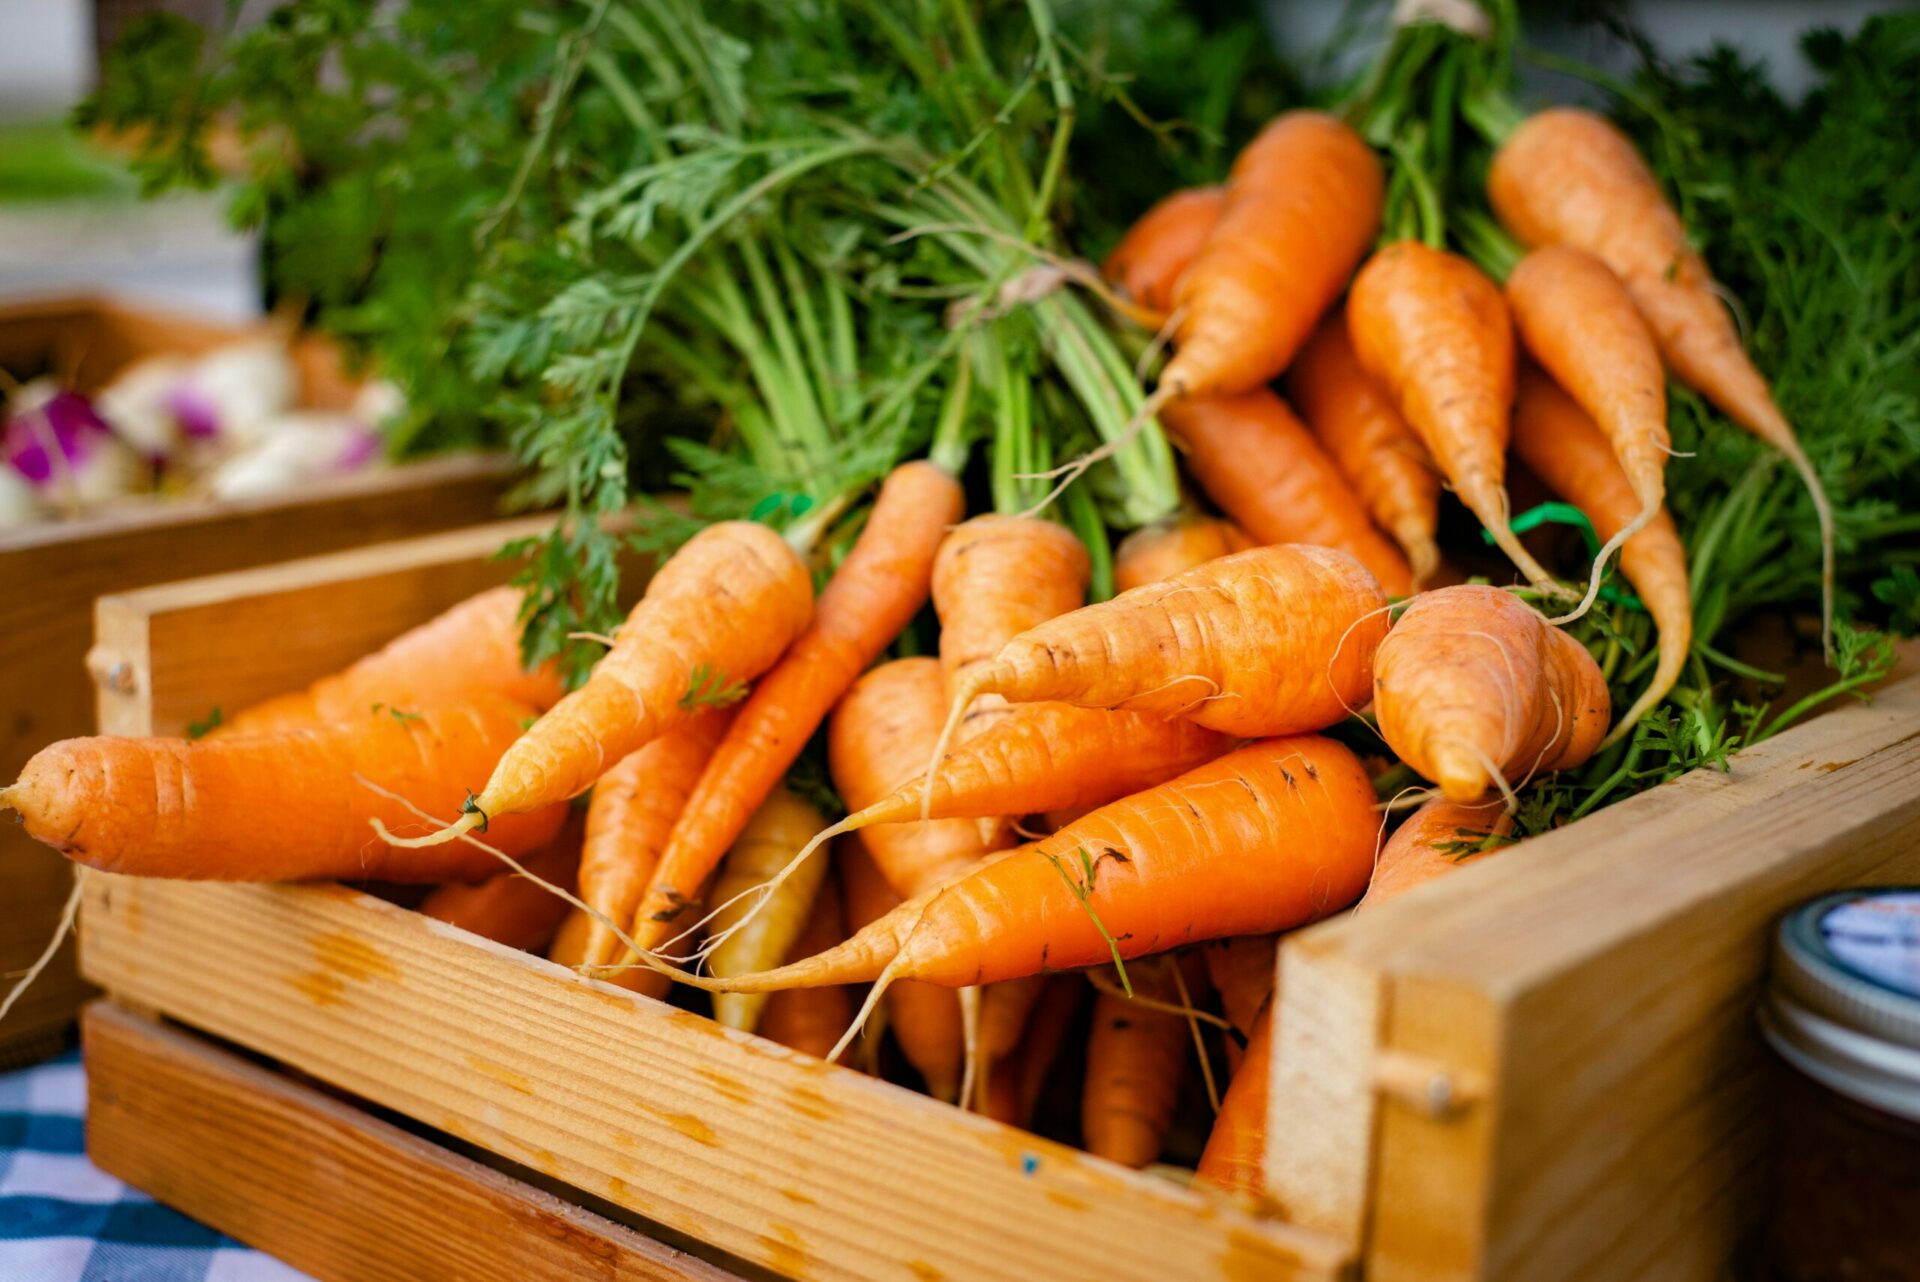 How Long Do Carrots Last in the Fridge?